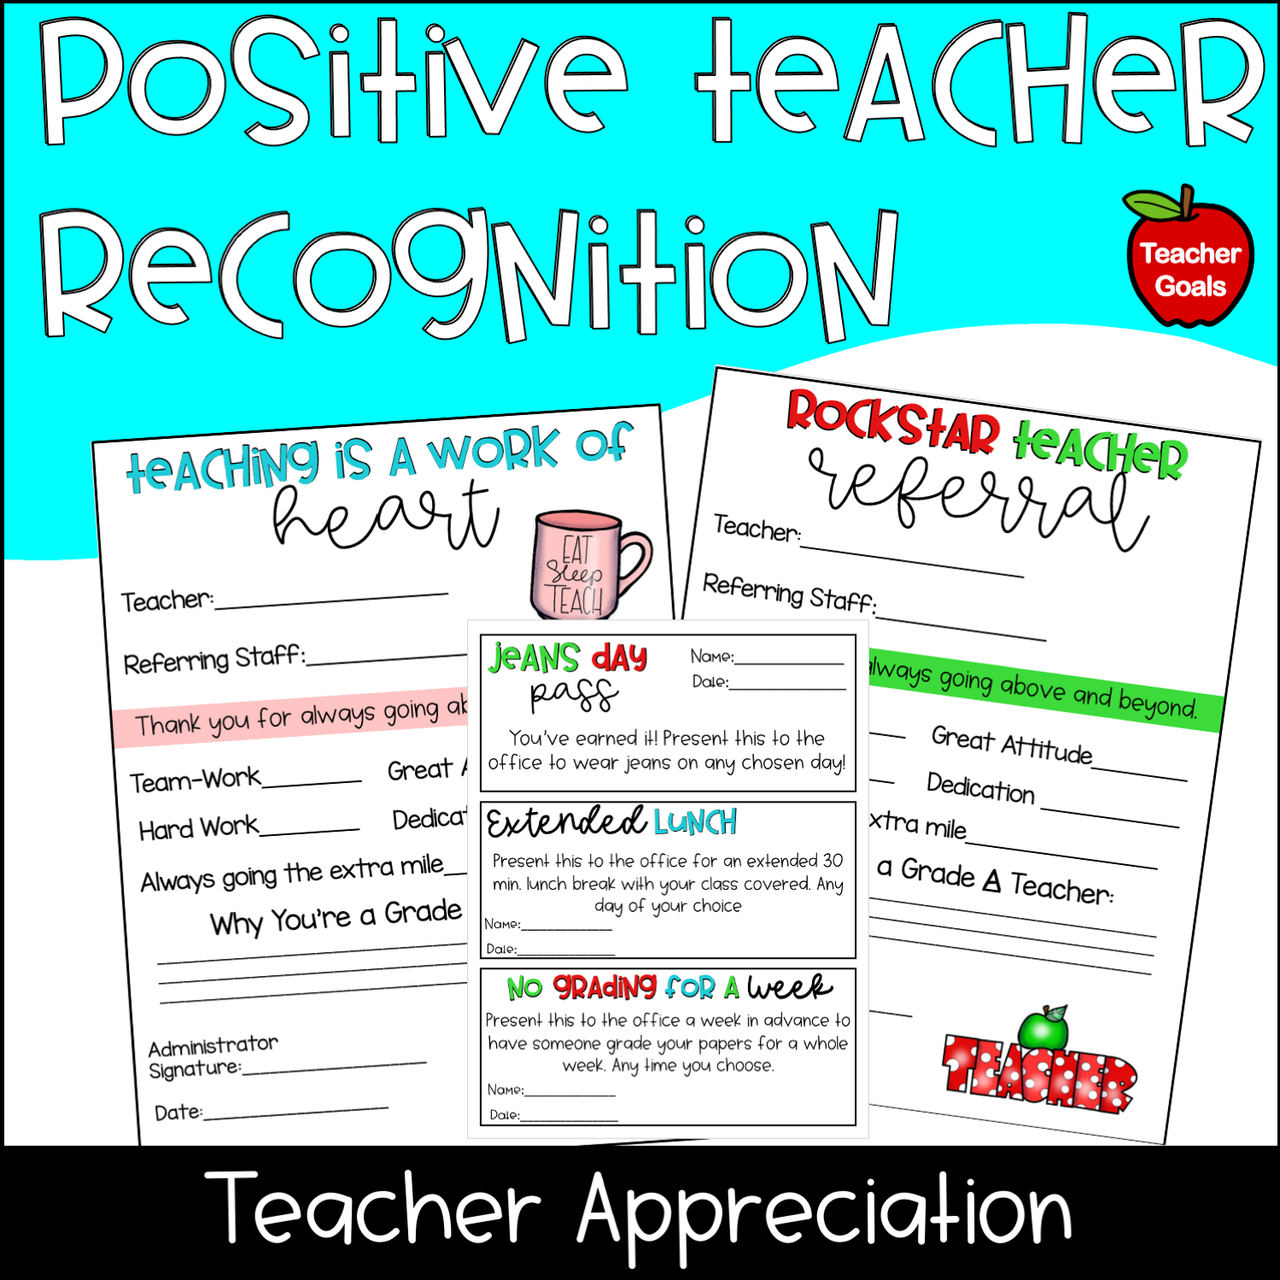 Positive Teacher Recognition Form - FREE